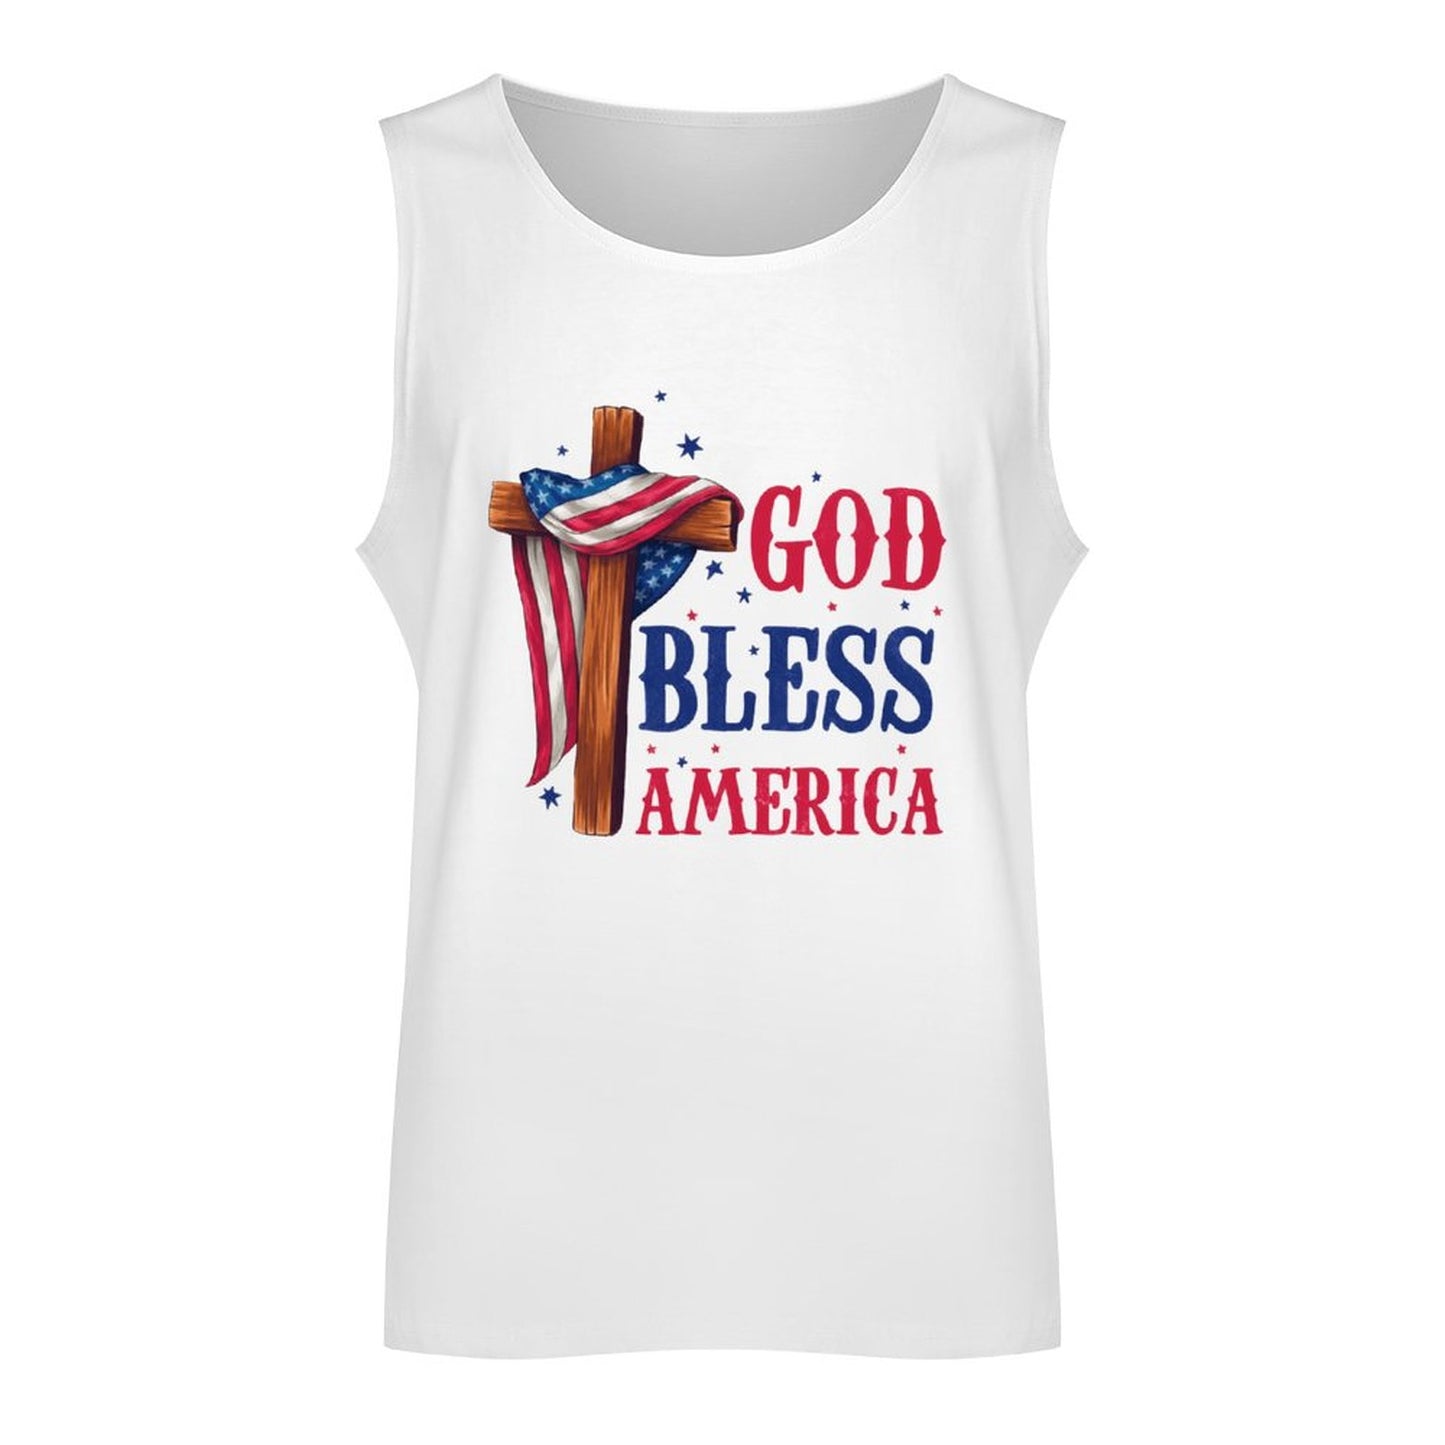 God Bless America Flag Over Cross Patriotic Men's Christian Tank Top